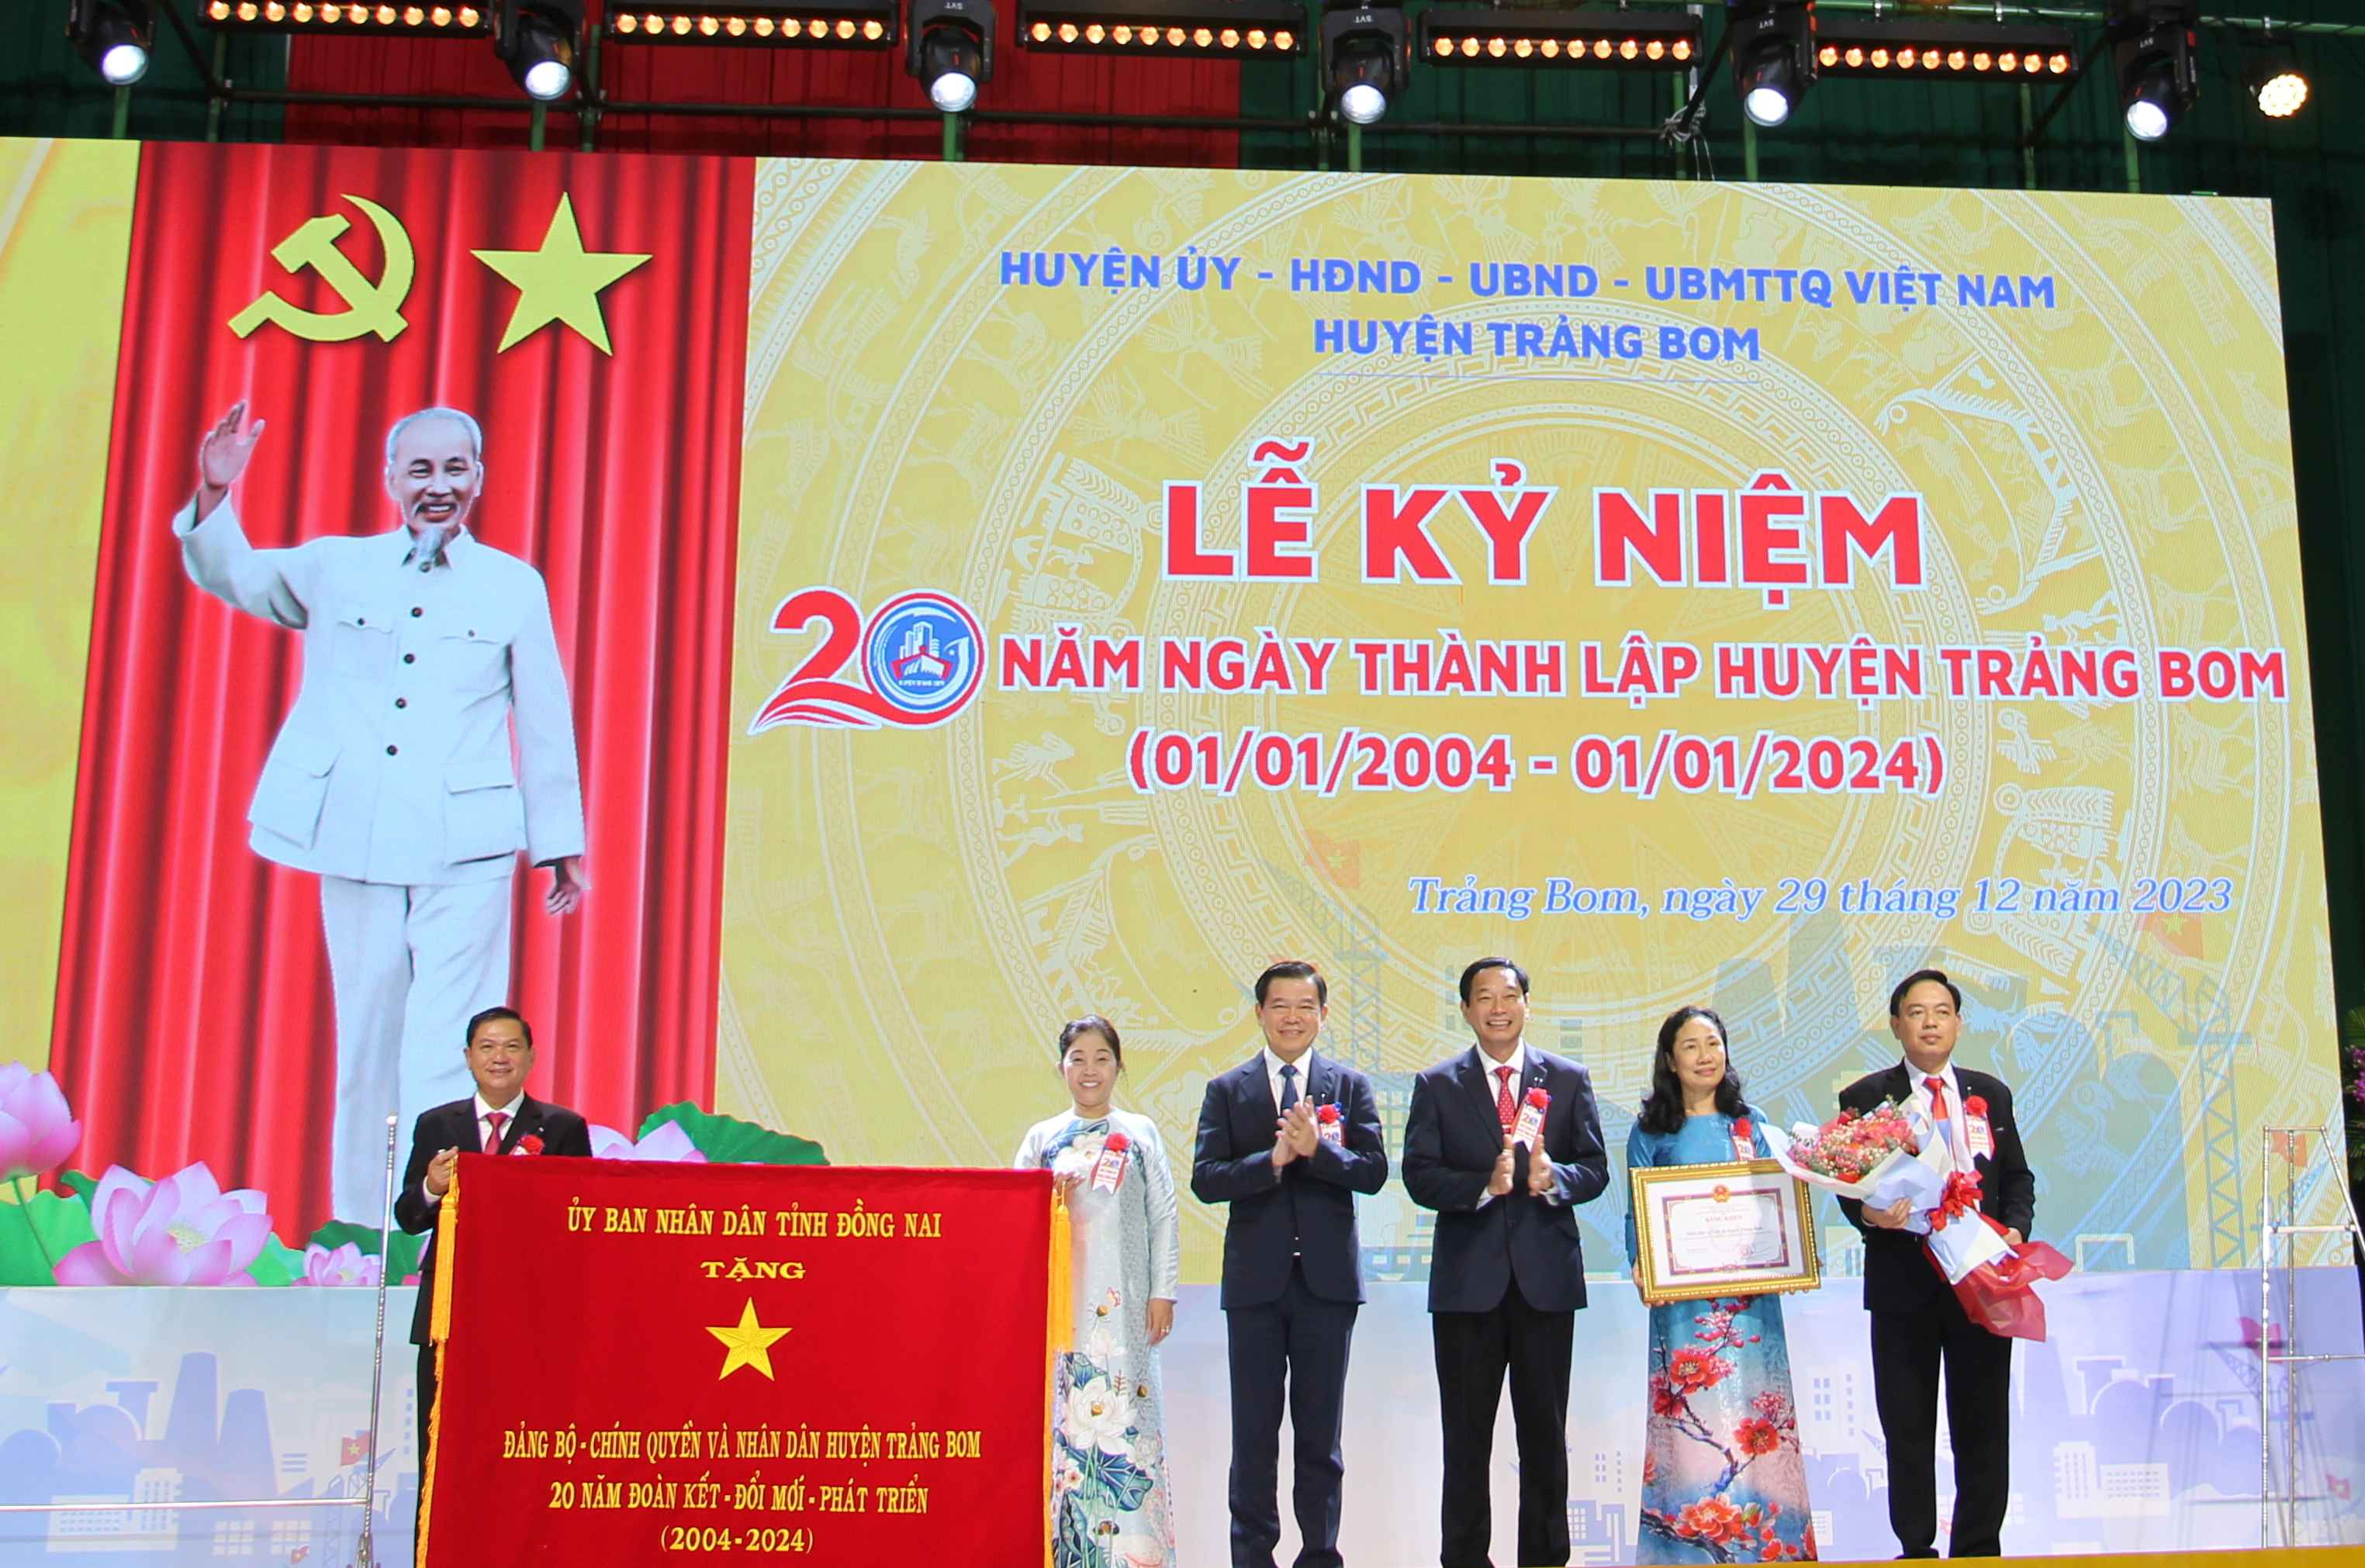 Ông Nguyễn Hồng Lĩnh - Ủy viên Trung ương Đảng, Bí thư Tỉnh ủy và ông Võ Văn Phi - Phó chủ tịch UBND tỉnh đã trao tặng bức trướng cho huyện Trảng Bom.